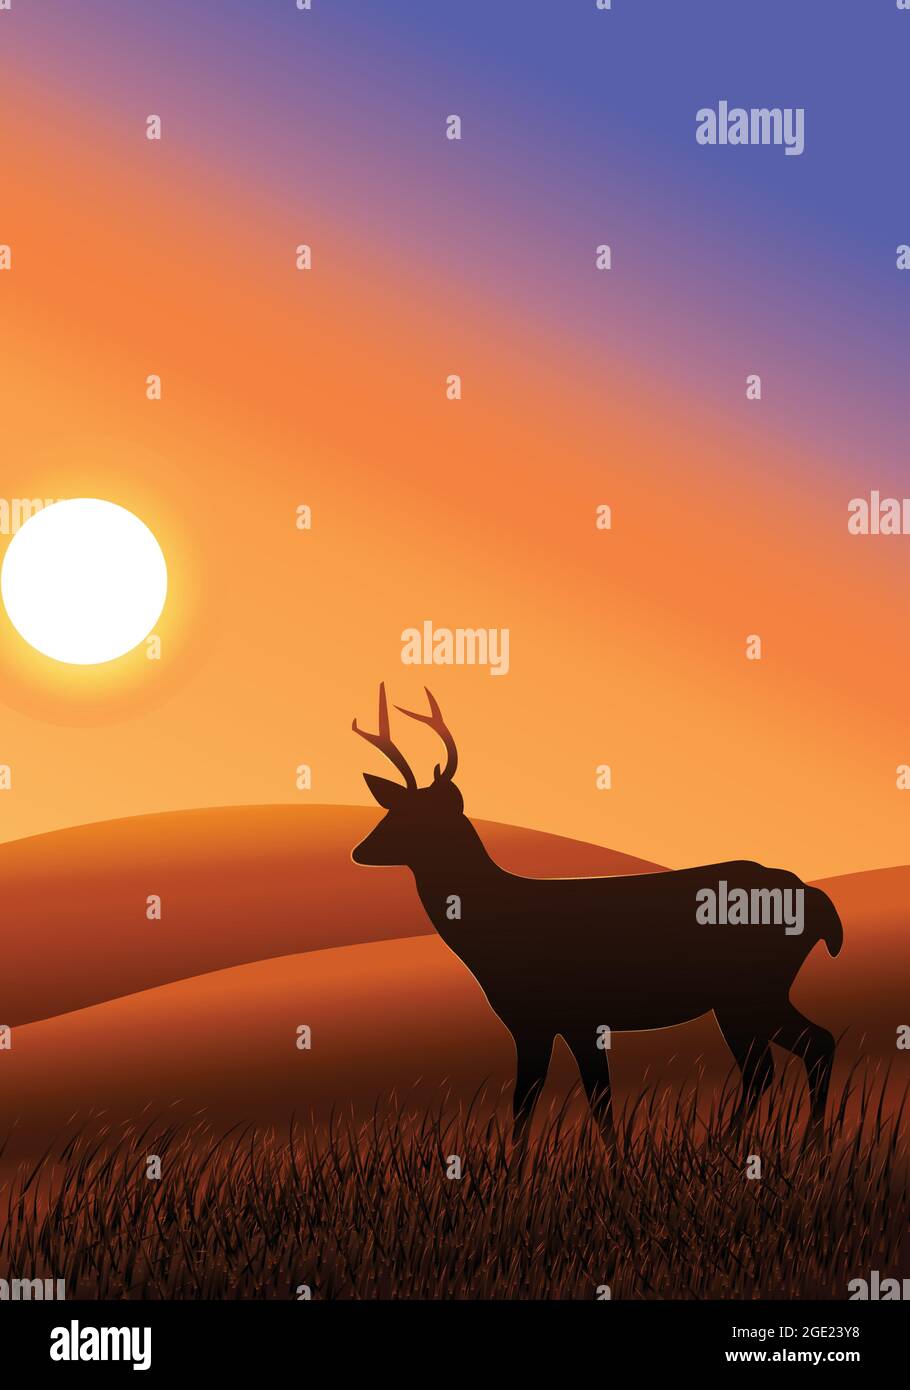 Sagoma del cervo sullo sfondo del tramonto. Splendido sfondo al tramonto con la silhouette del cervo. Stag o renna nella foresta. Illustrazione Vettoriale